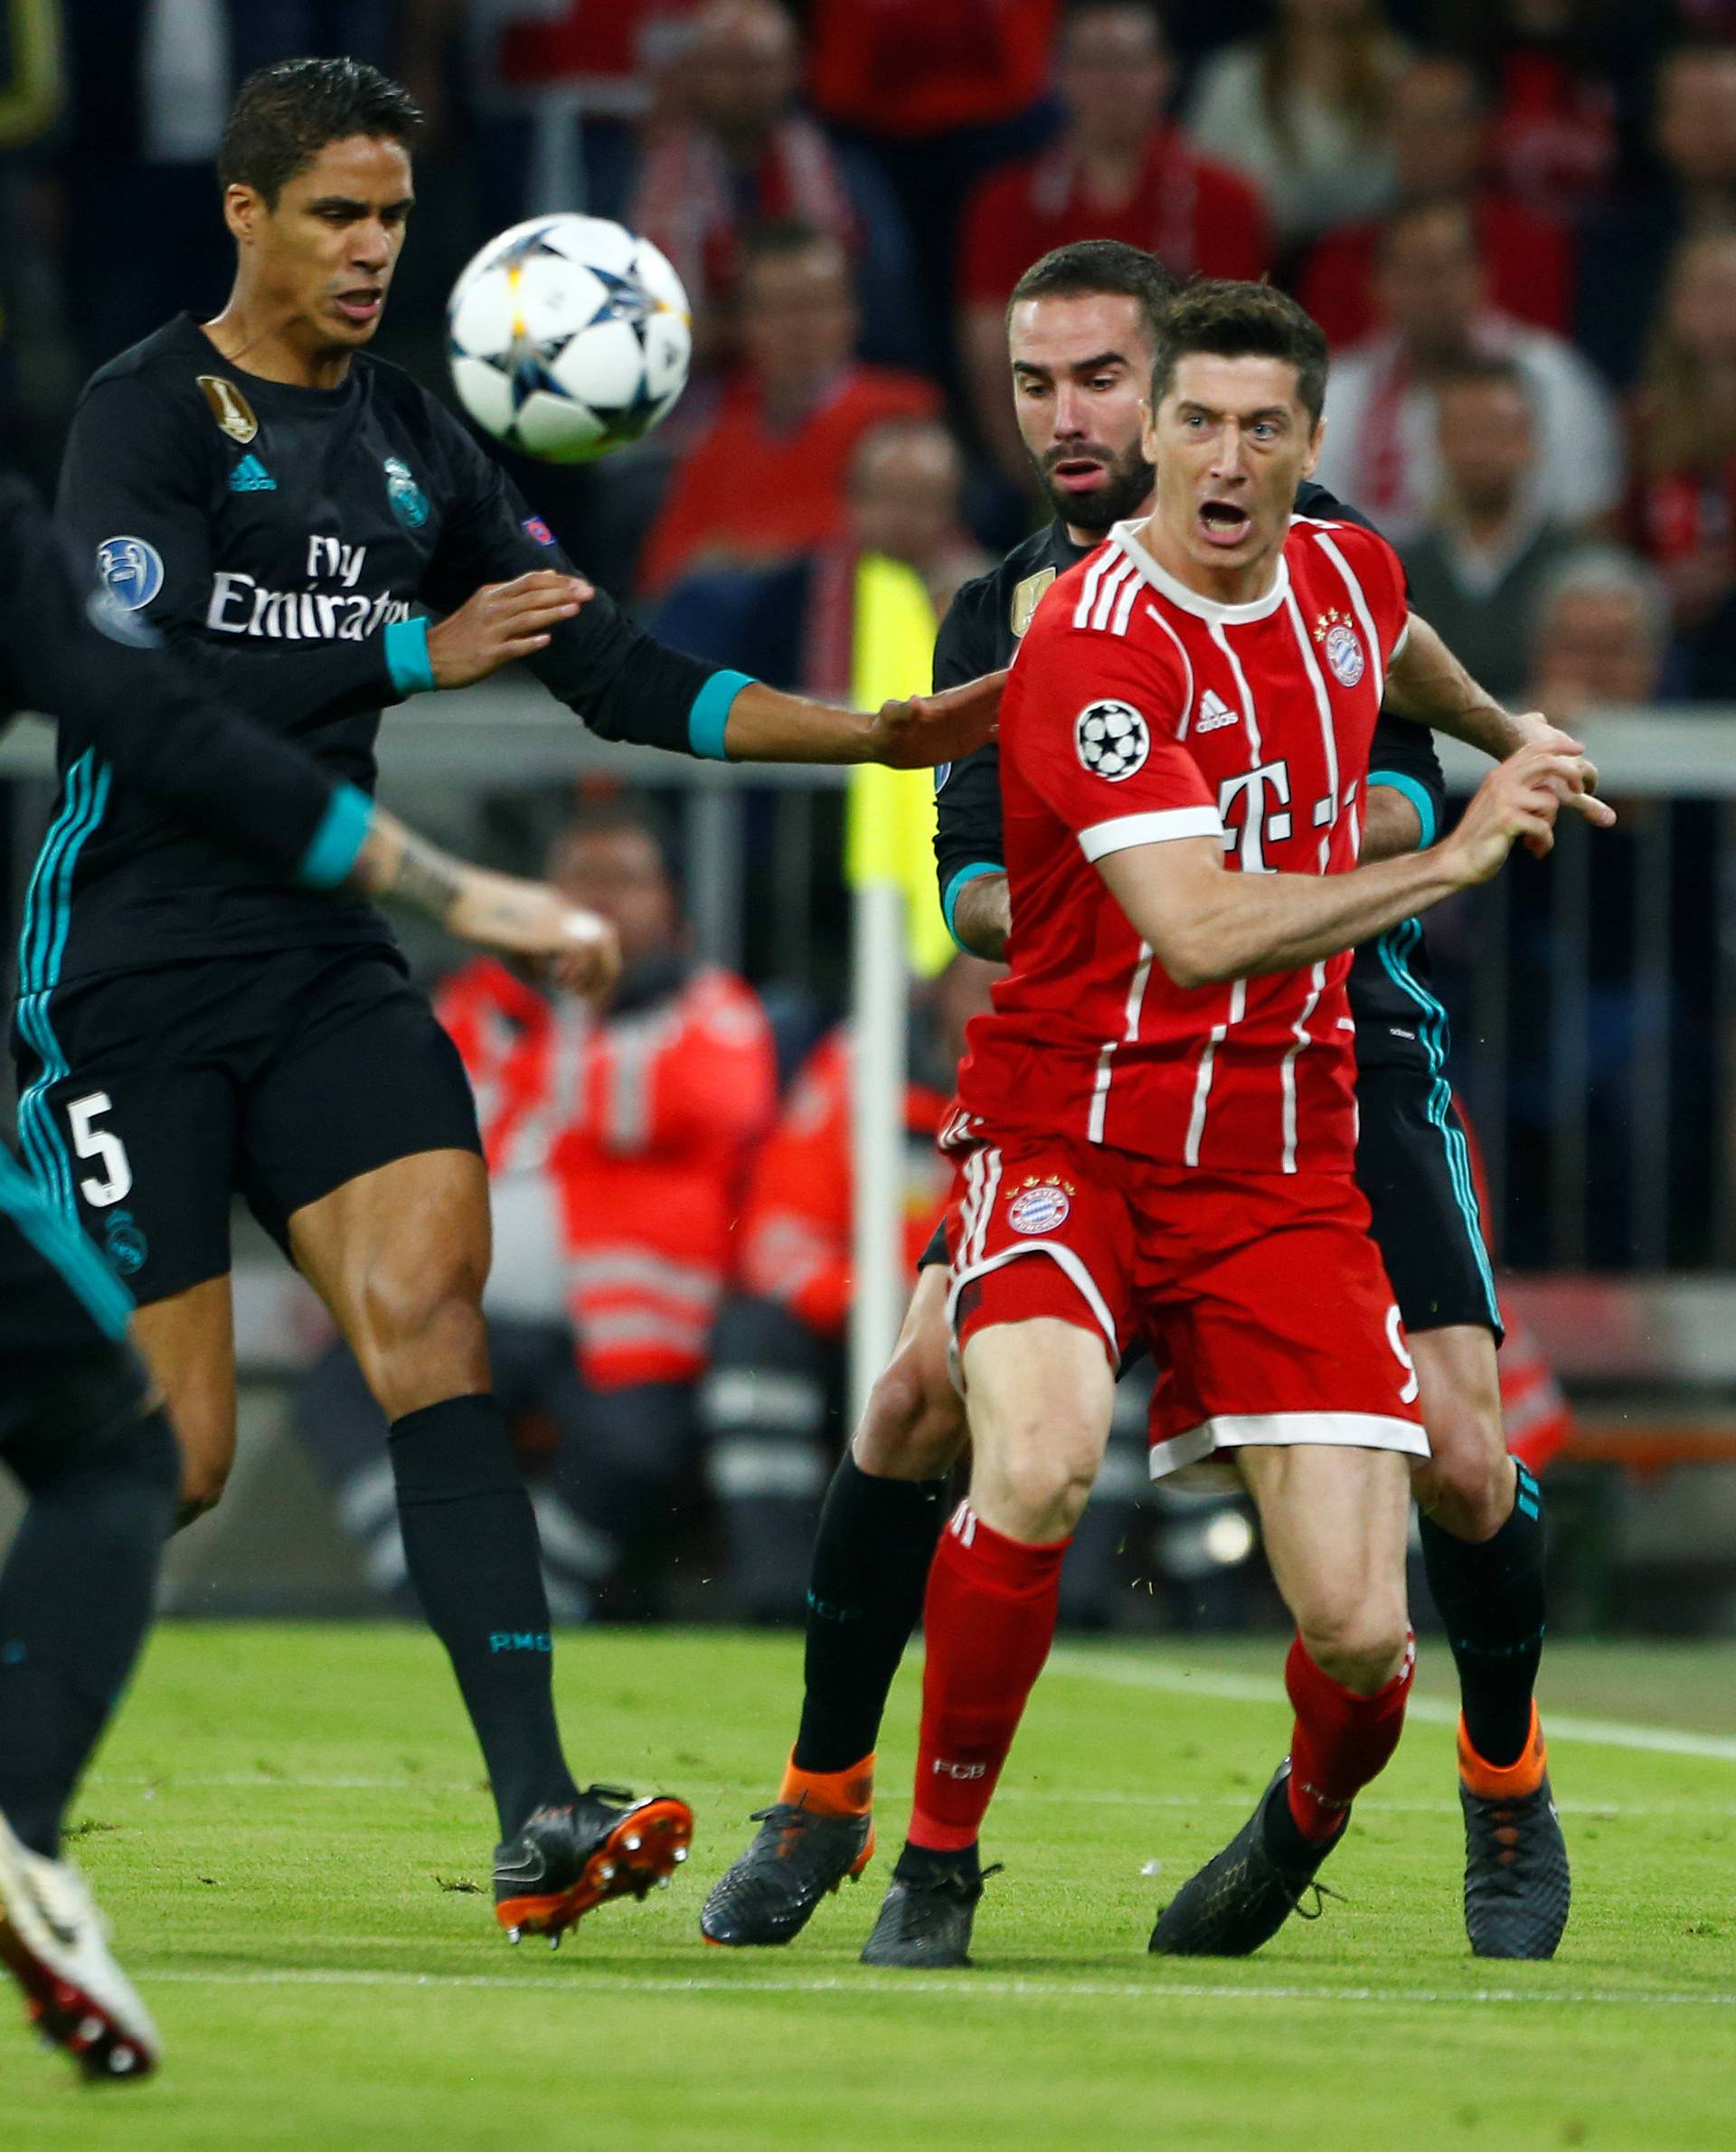 Champions League Semi Final First Leg - Bayern Munich vs Real Madrid